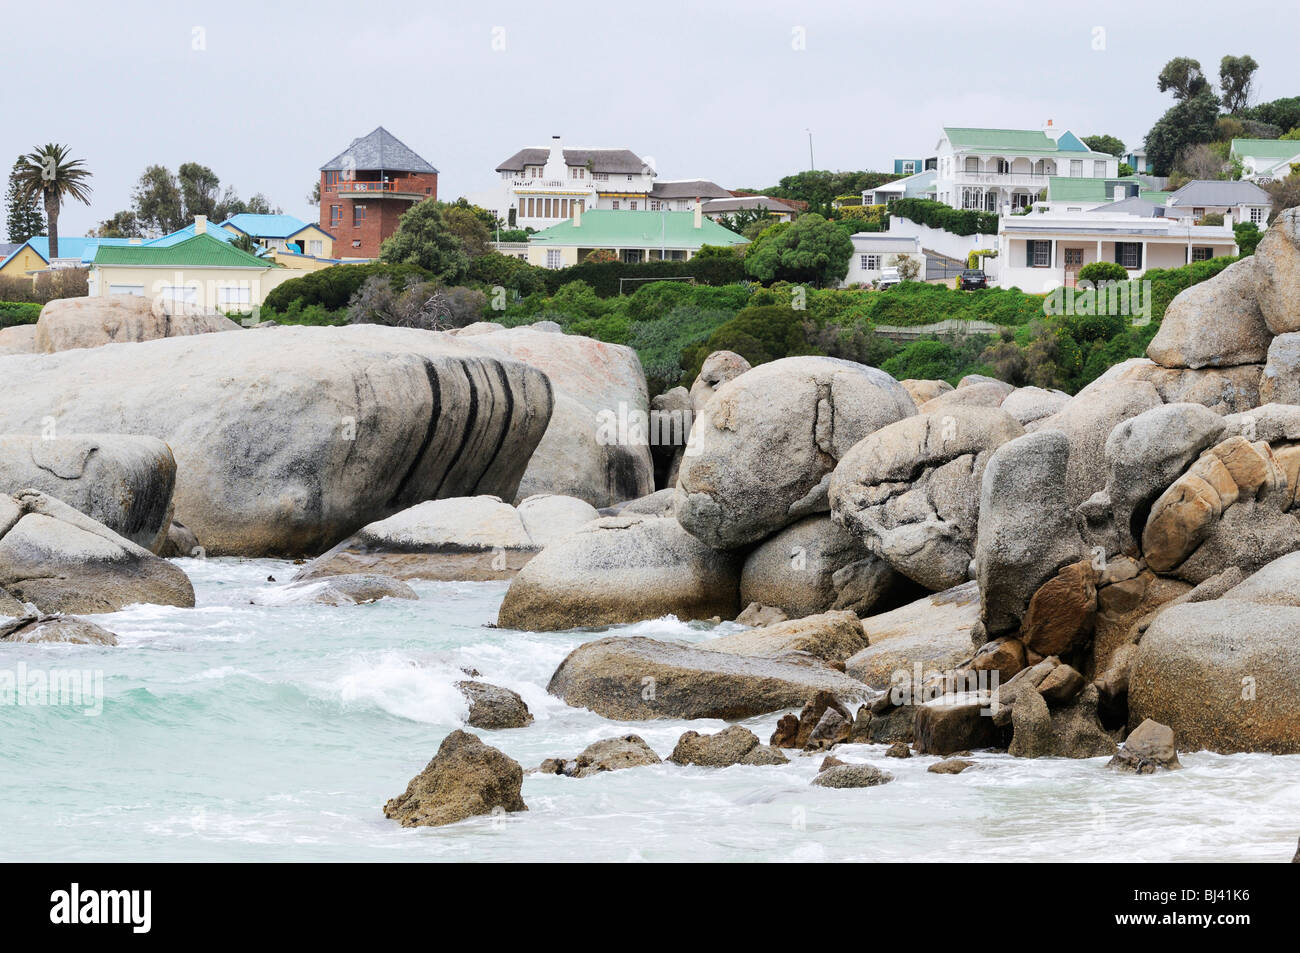 La plage de Boulders, Simon's Town, dans la province du Cap, Afrique du Sud, l'Afrique Banque D'Images